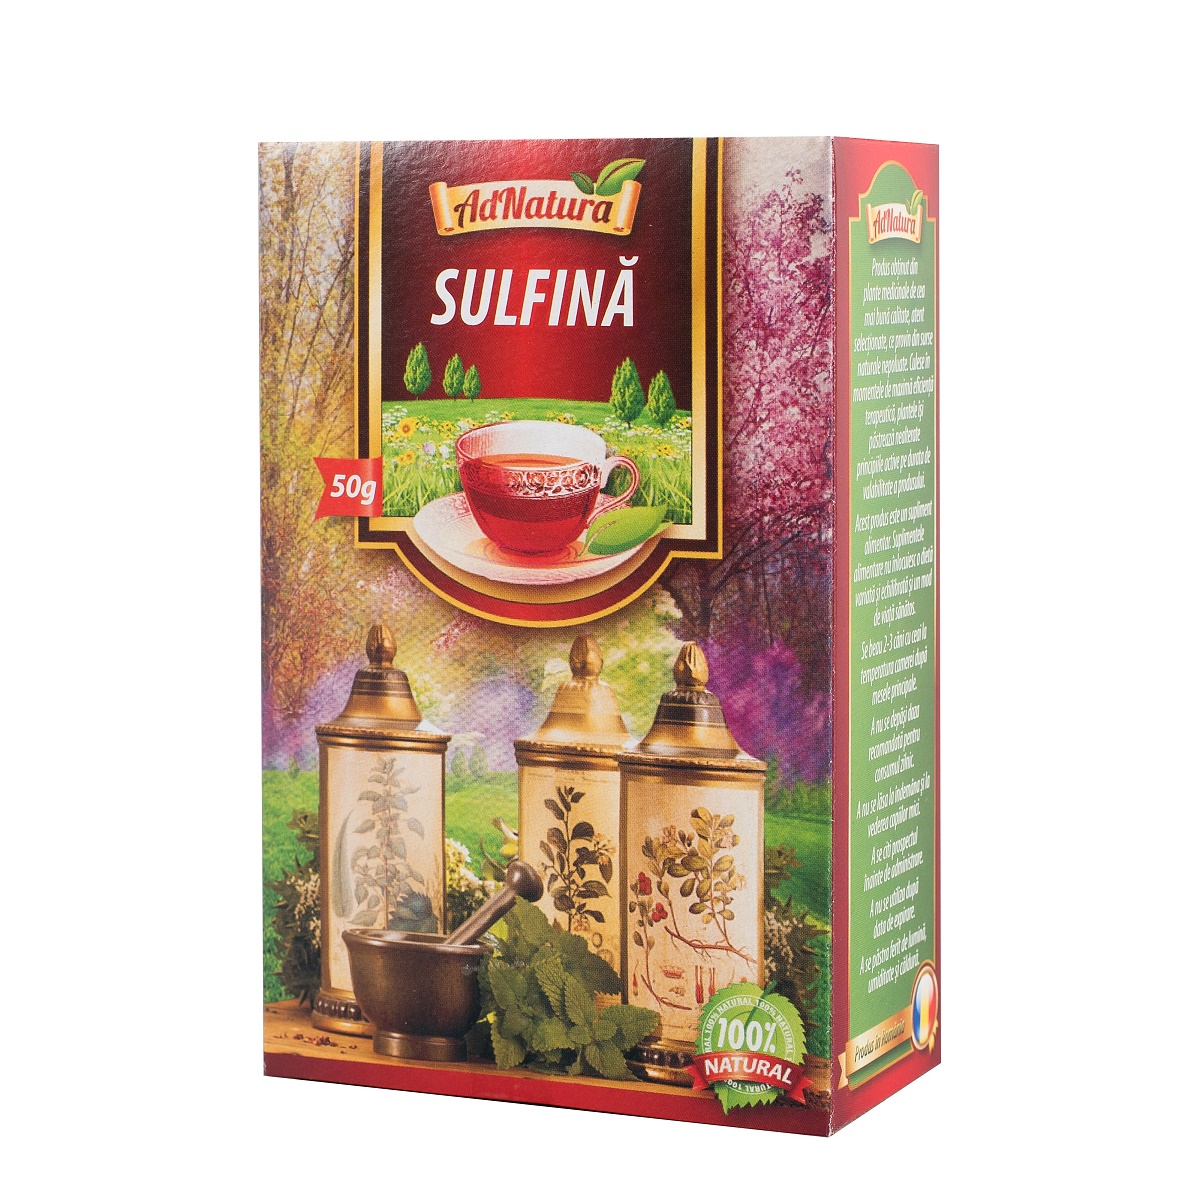 Ceai de sulfina, 50 g, AdNatura